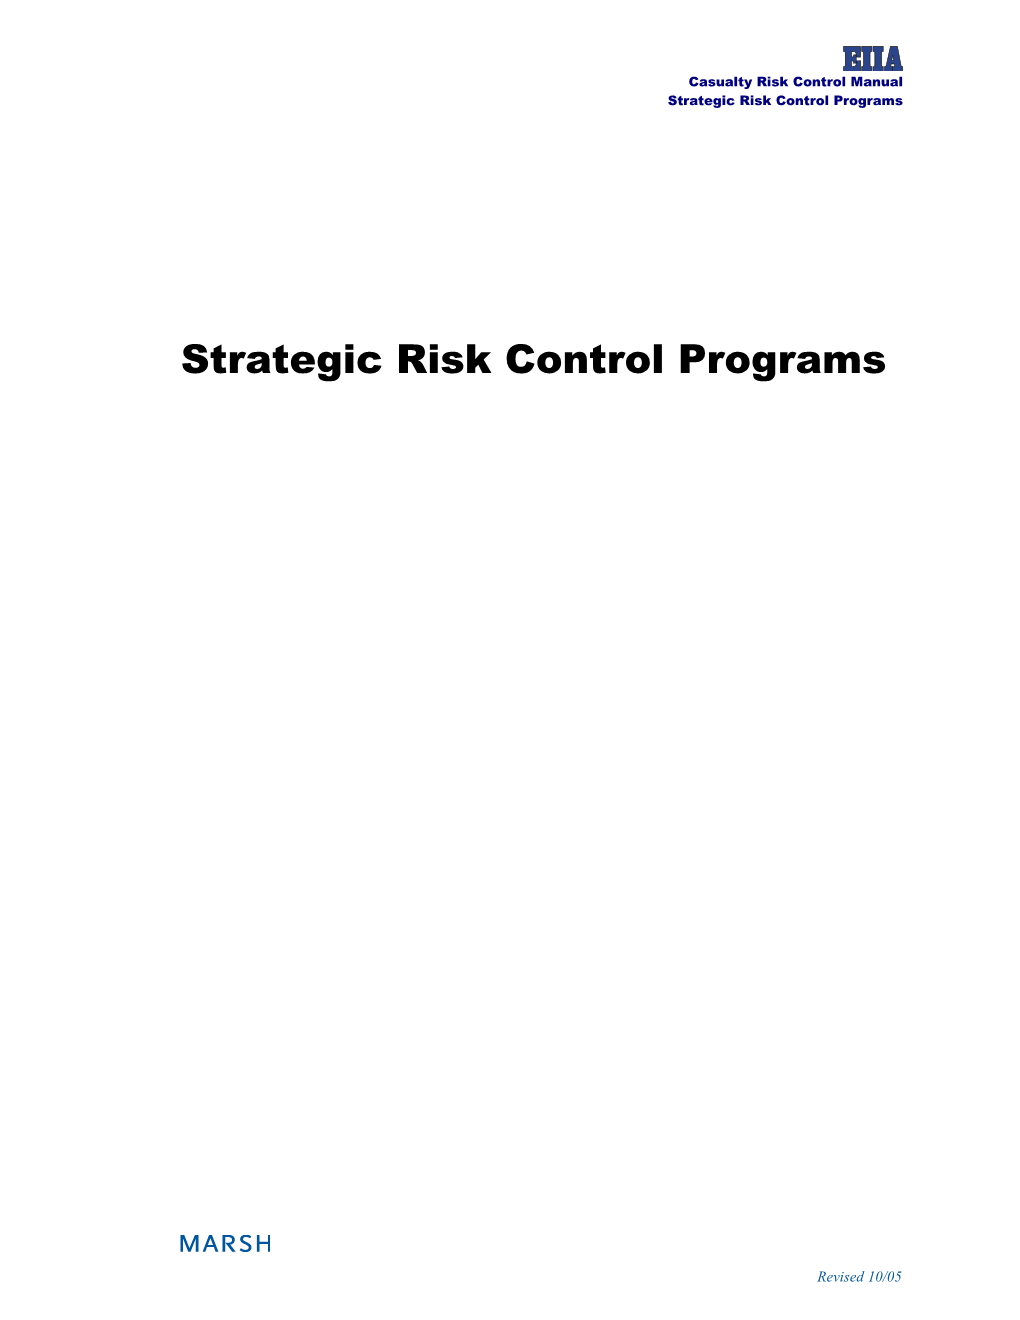 Strategic Risk Control Programs